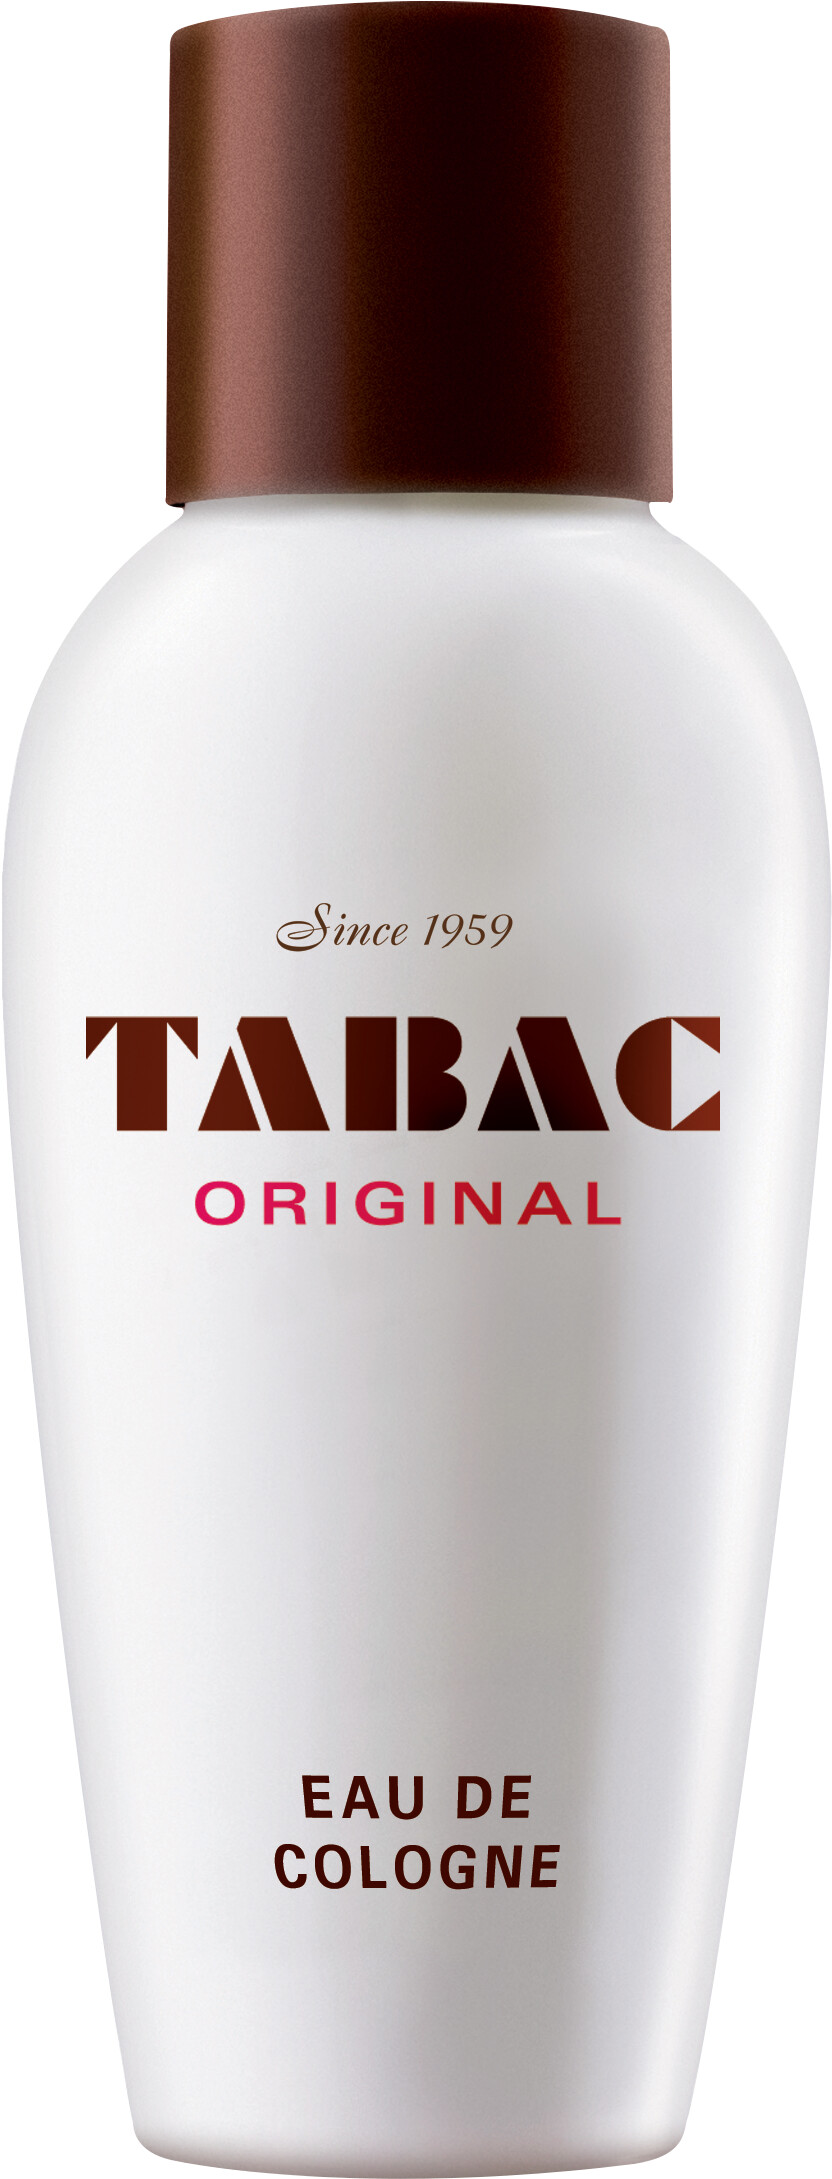 TABAC Original Eau de Cologne 50ml